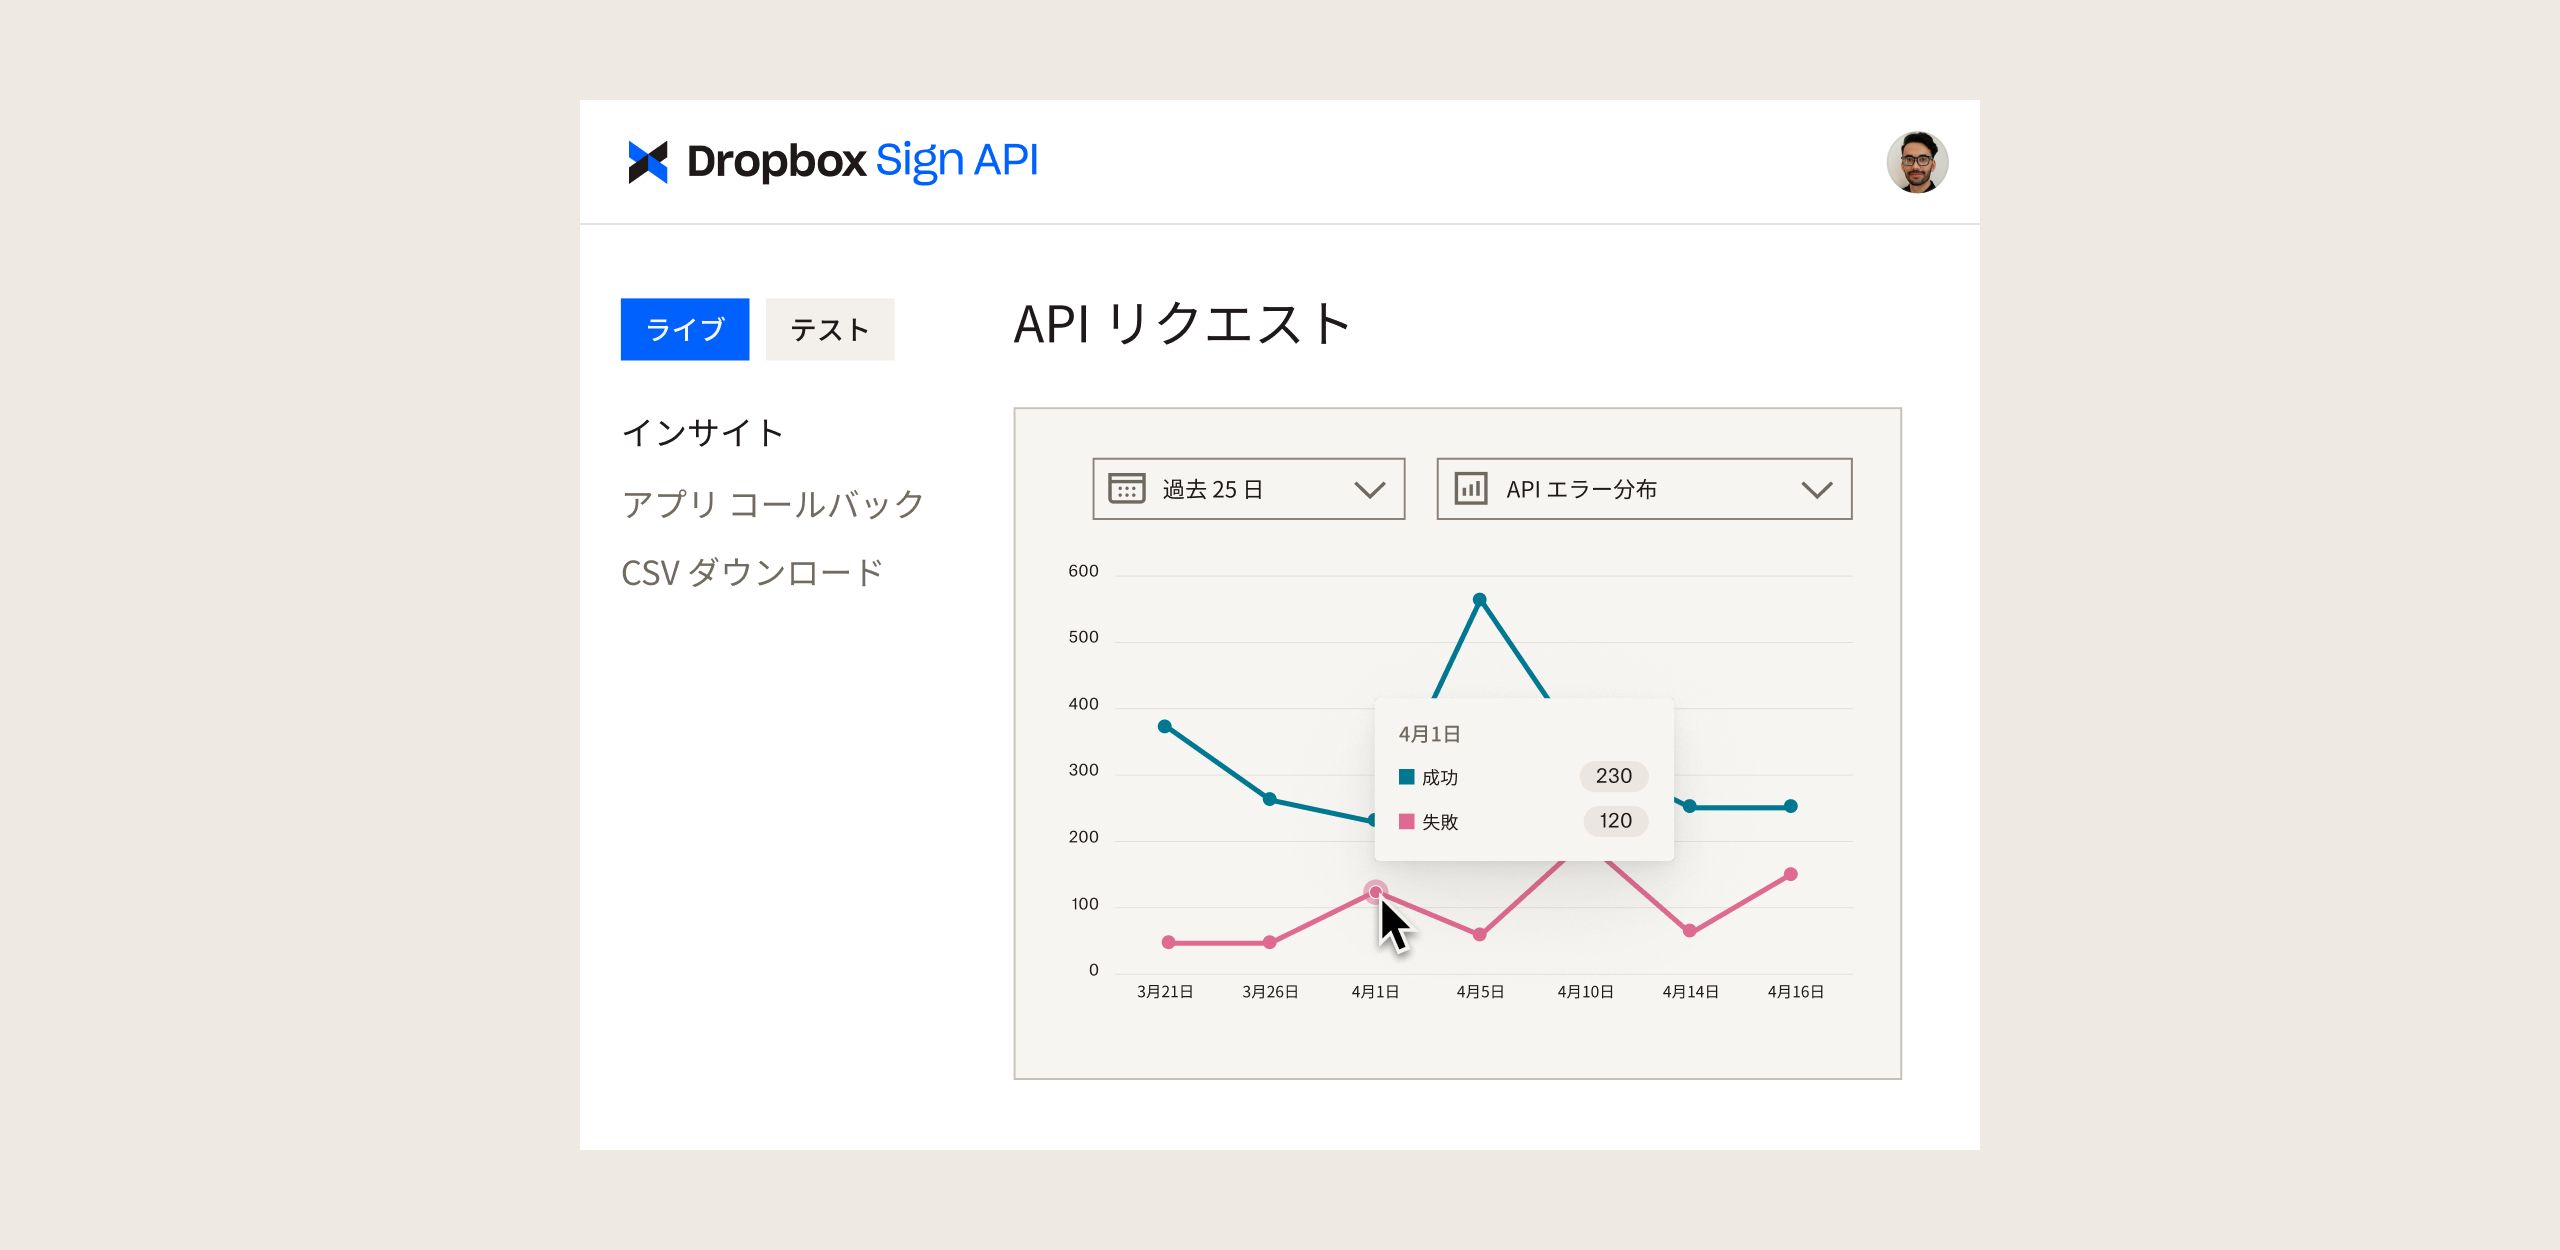 Dropbox Sign API ダッシュボードに API リクエスト数の推移を示すグラフが表示されている様子